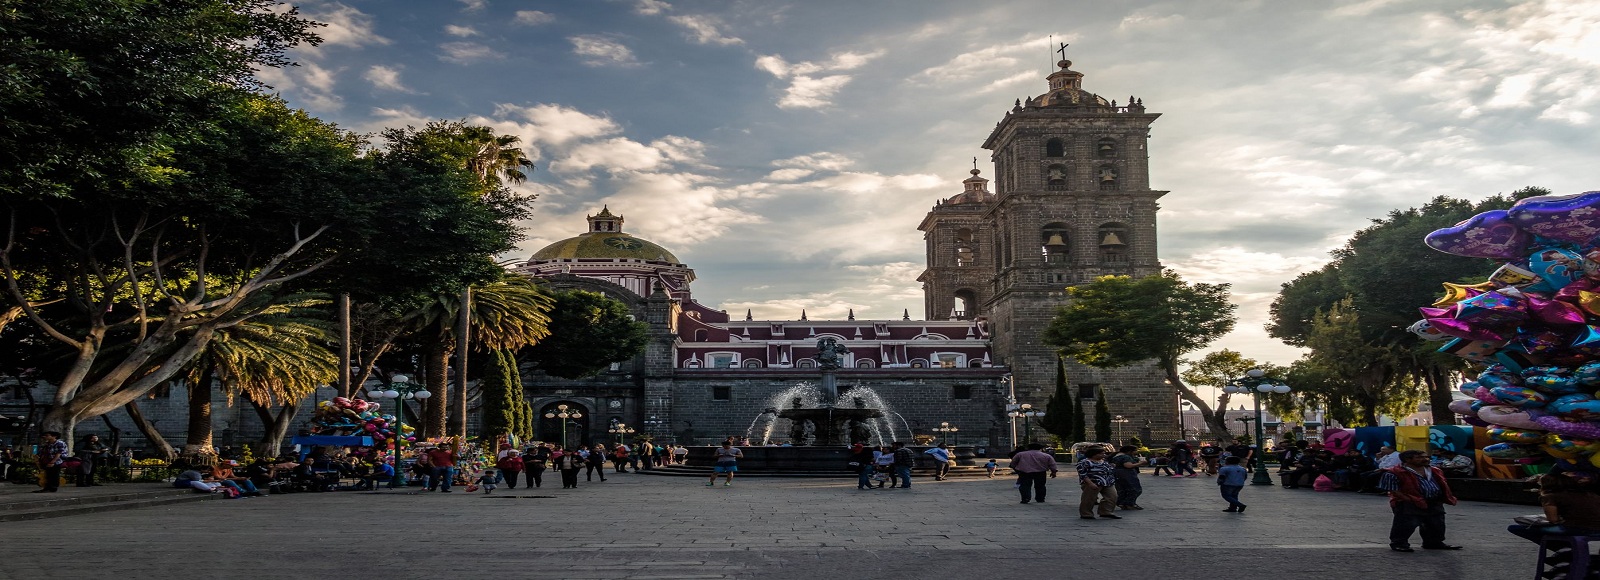 Ofertas de Traslados en Puebla. Traslados económicos en Puebla 